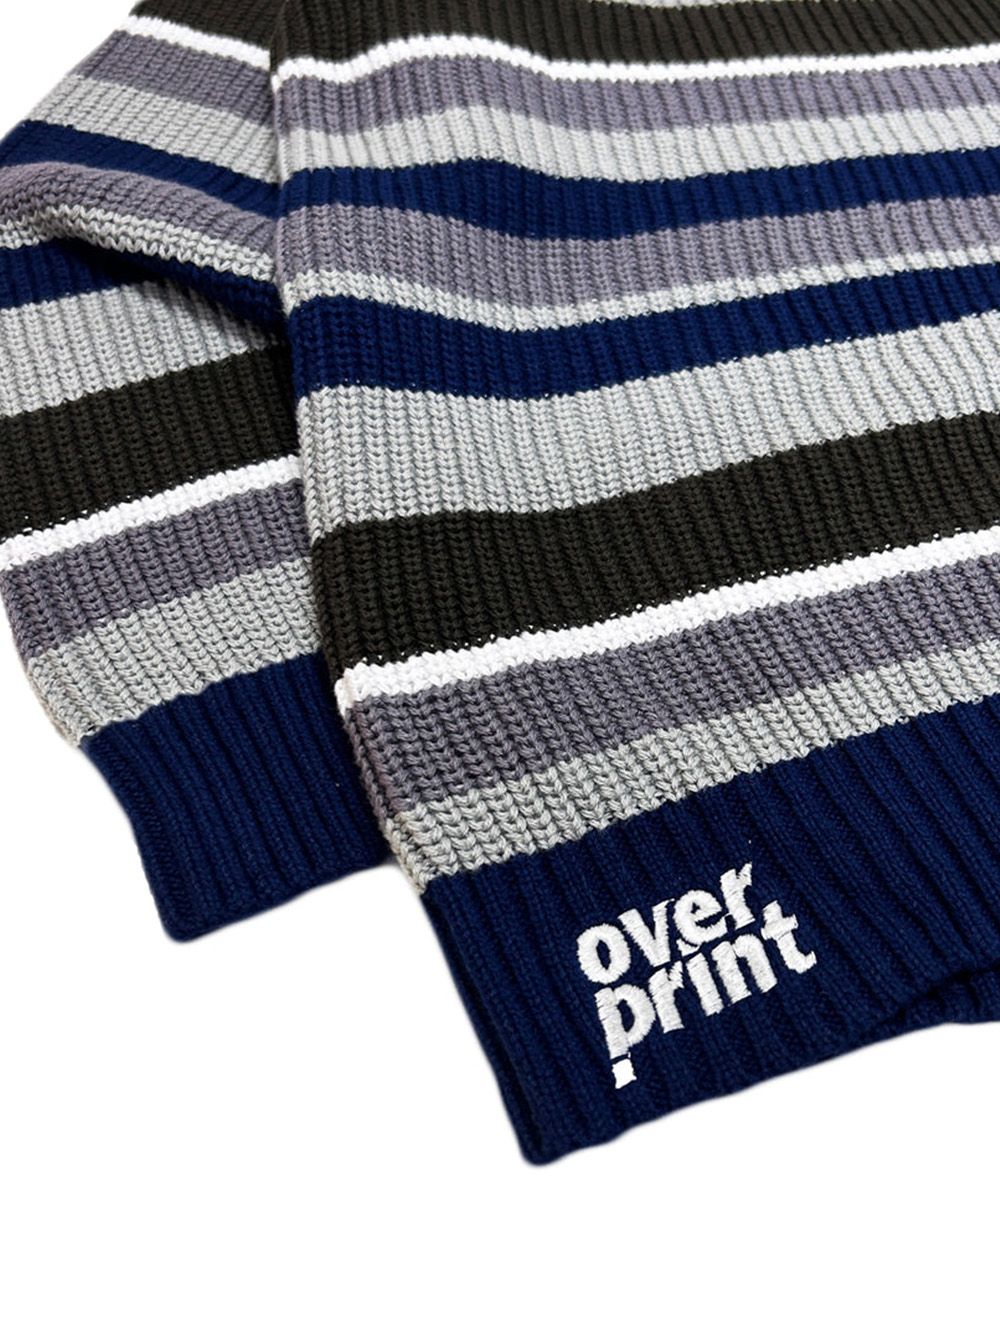 枚数限定! overprint boader cotton knit (blue